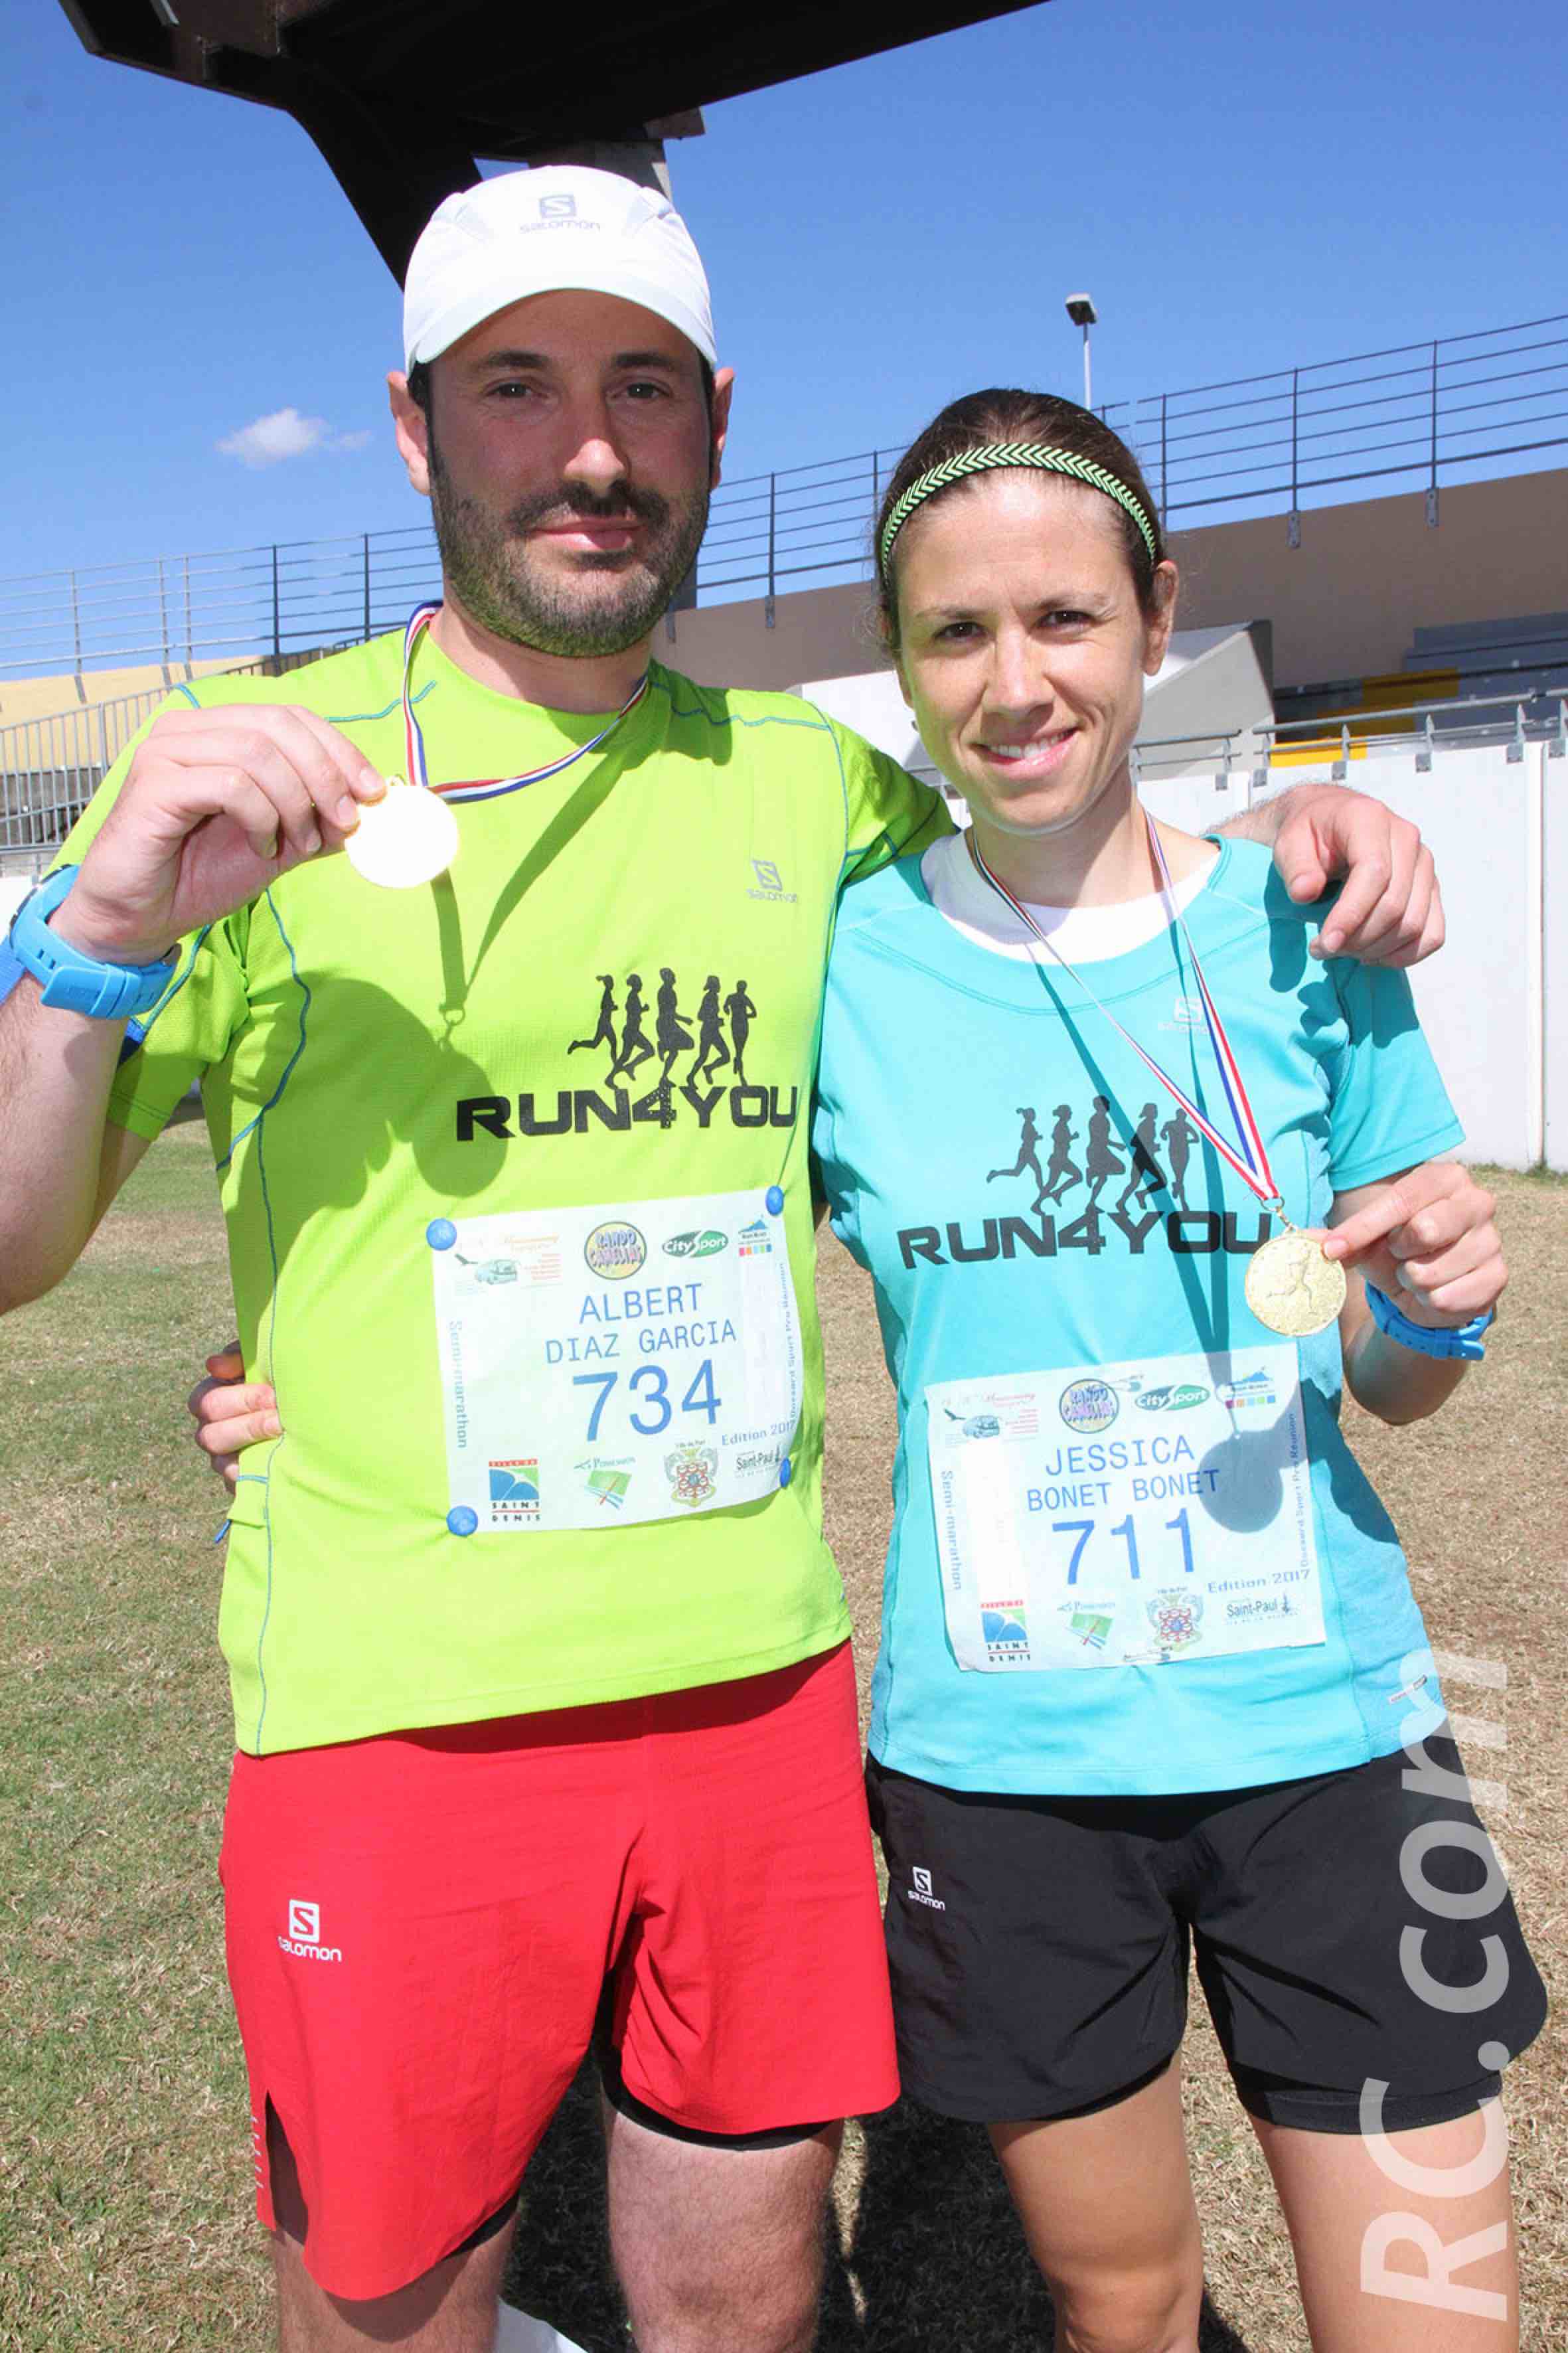 Marathon de la Corniche : Sanion et Hodgi remportent la 2ème édition